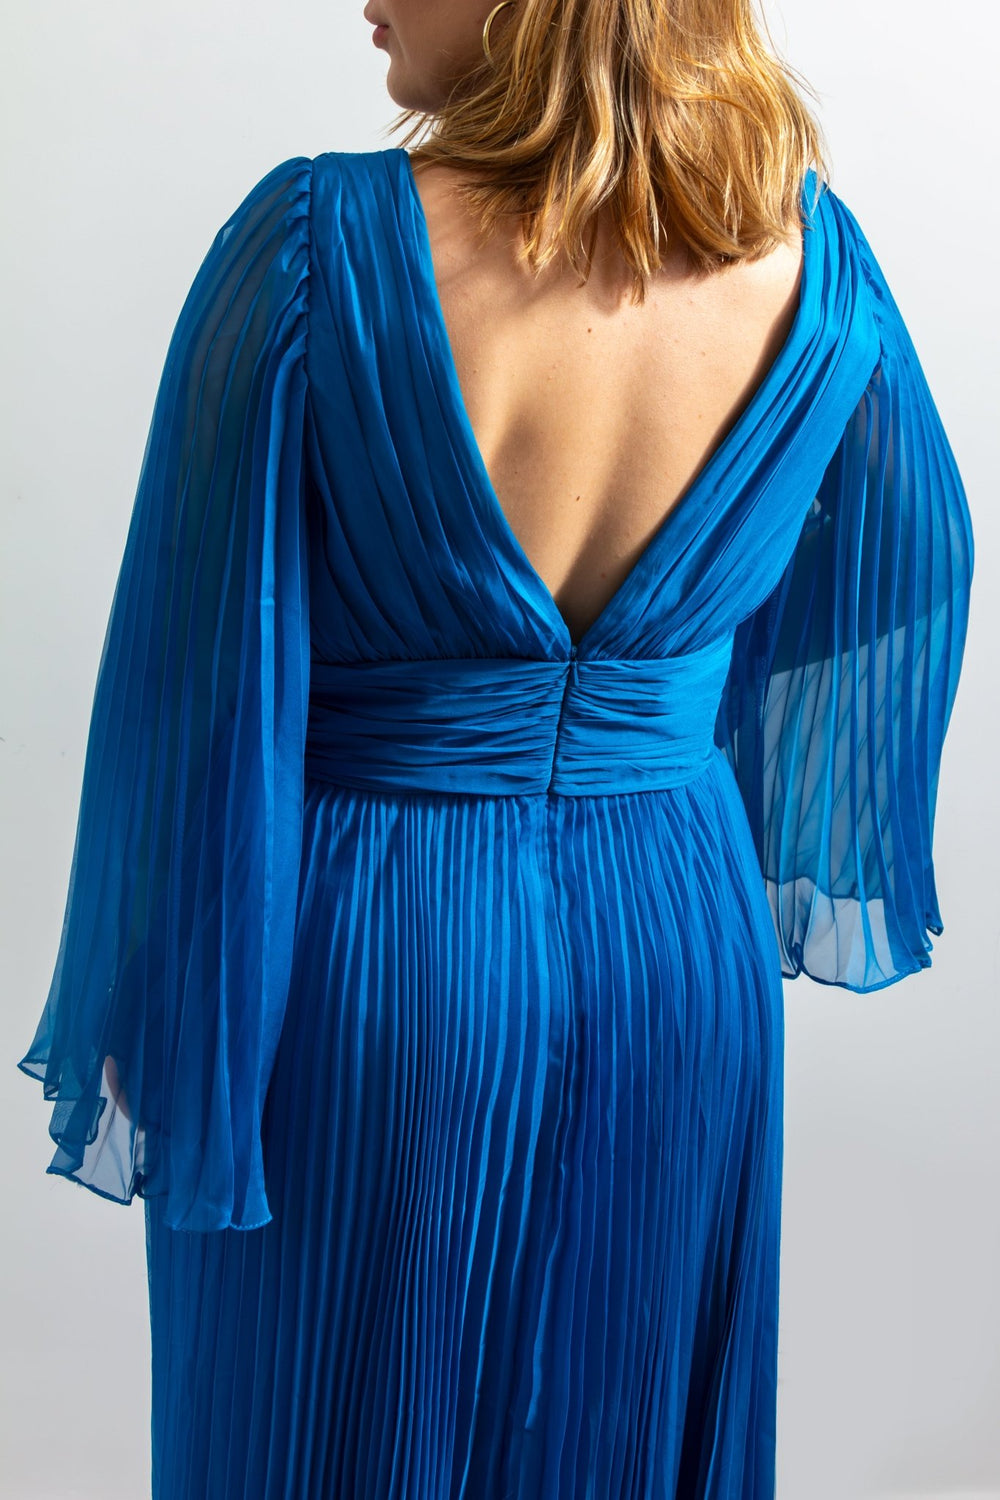 Anika - azul - Lend the Trend renta de vestidos mexico